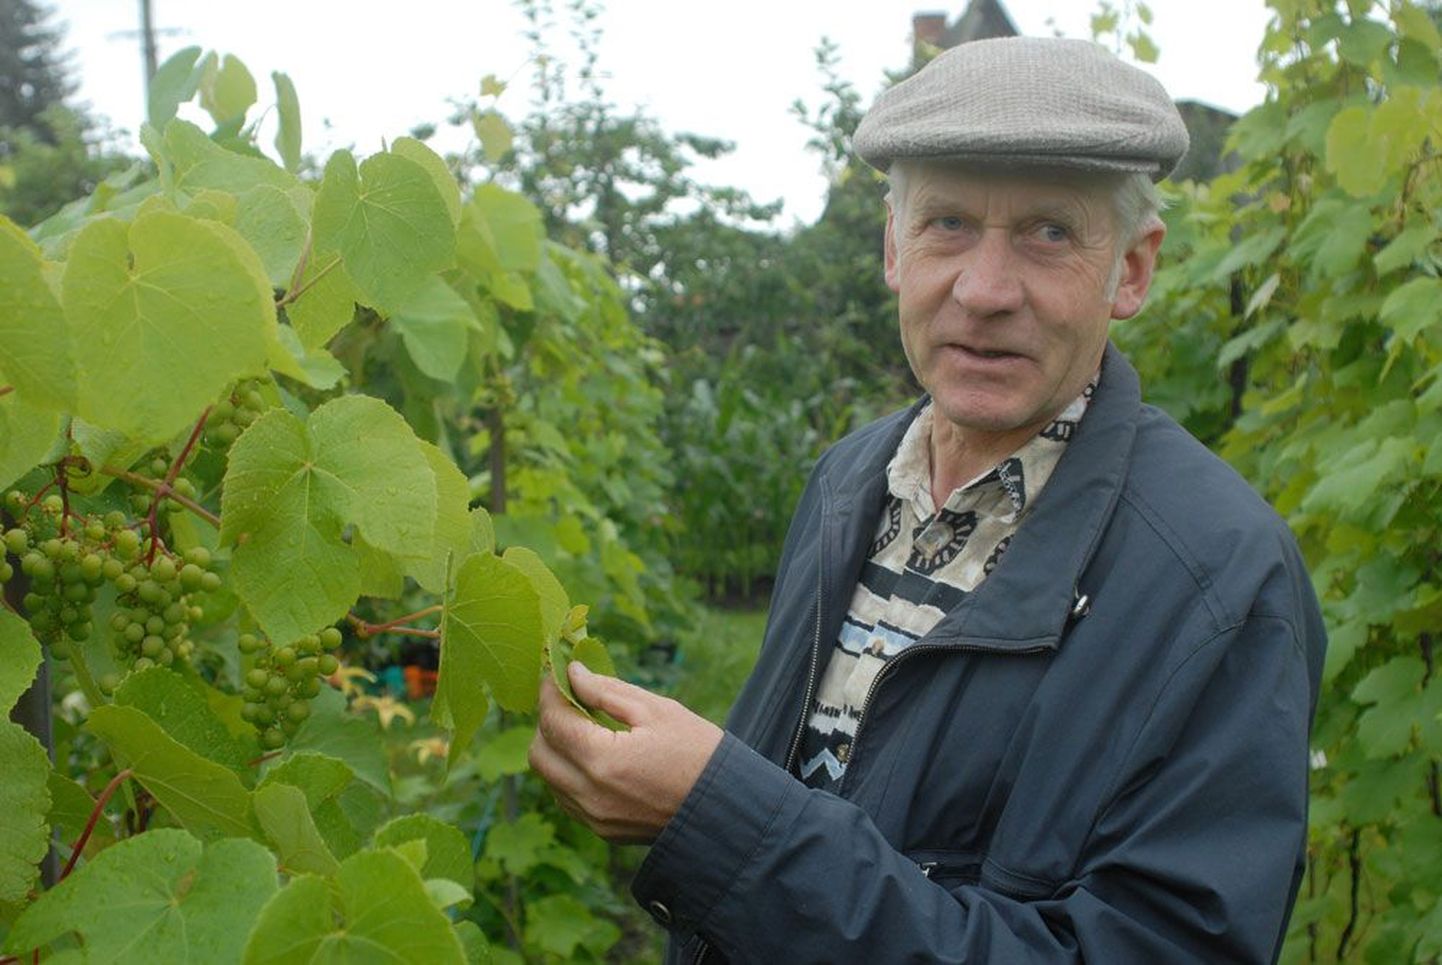 Eestis sobib viinamarjale kõige enam Pärnu lahe ümbrus, sest seal on pikk ja soe suvi, ütleb viinamarjakasvataja ja õppejõud Jaan Kivistik.